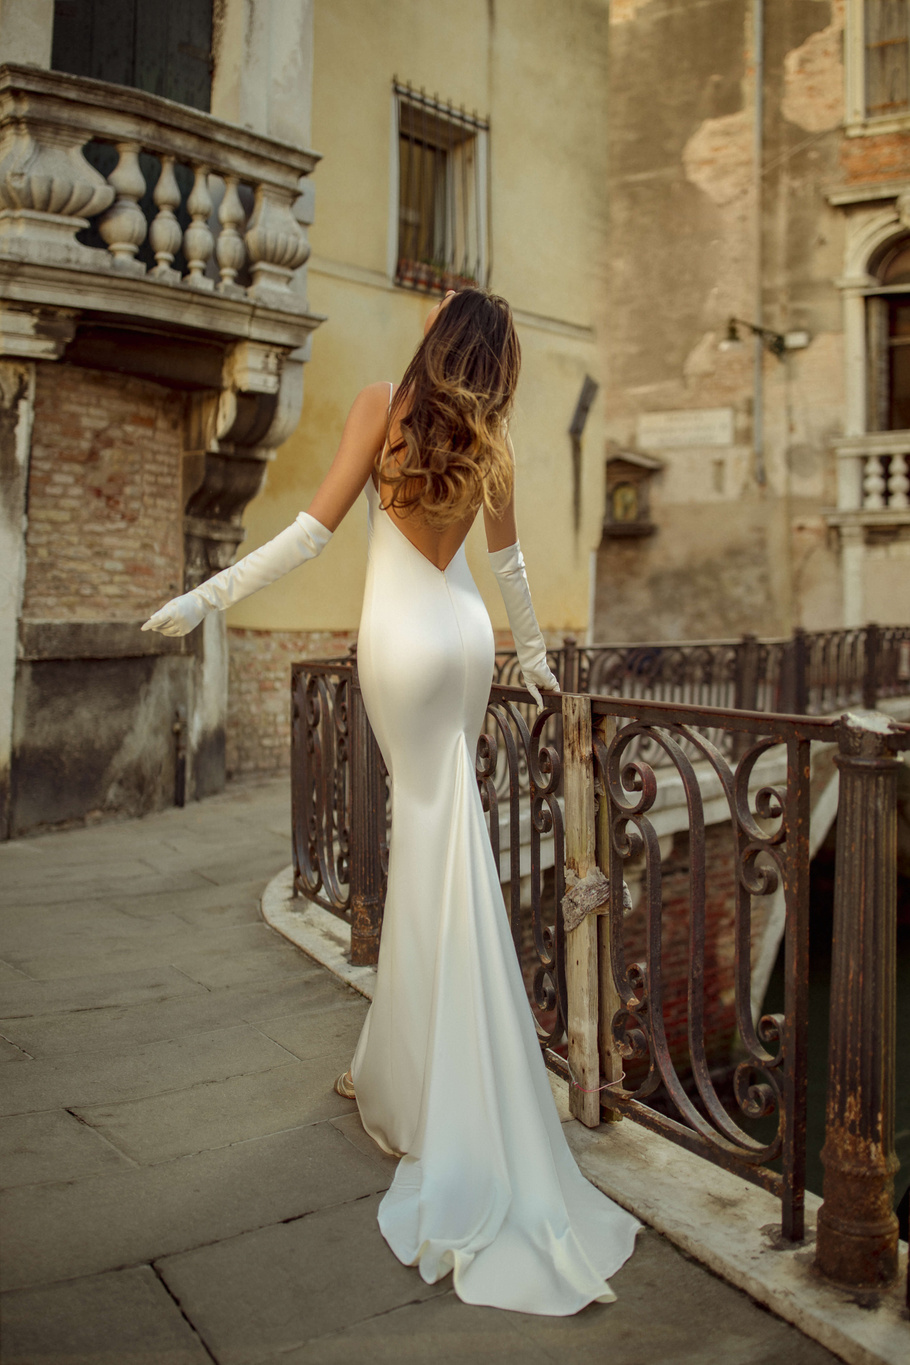 Купить свадебное платье «Фрея» Рара Авис из коллекции Вайт Сикрет 2020 года в интернет-магазине